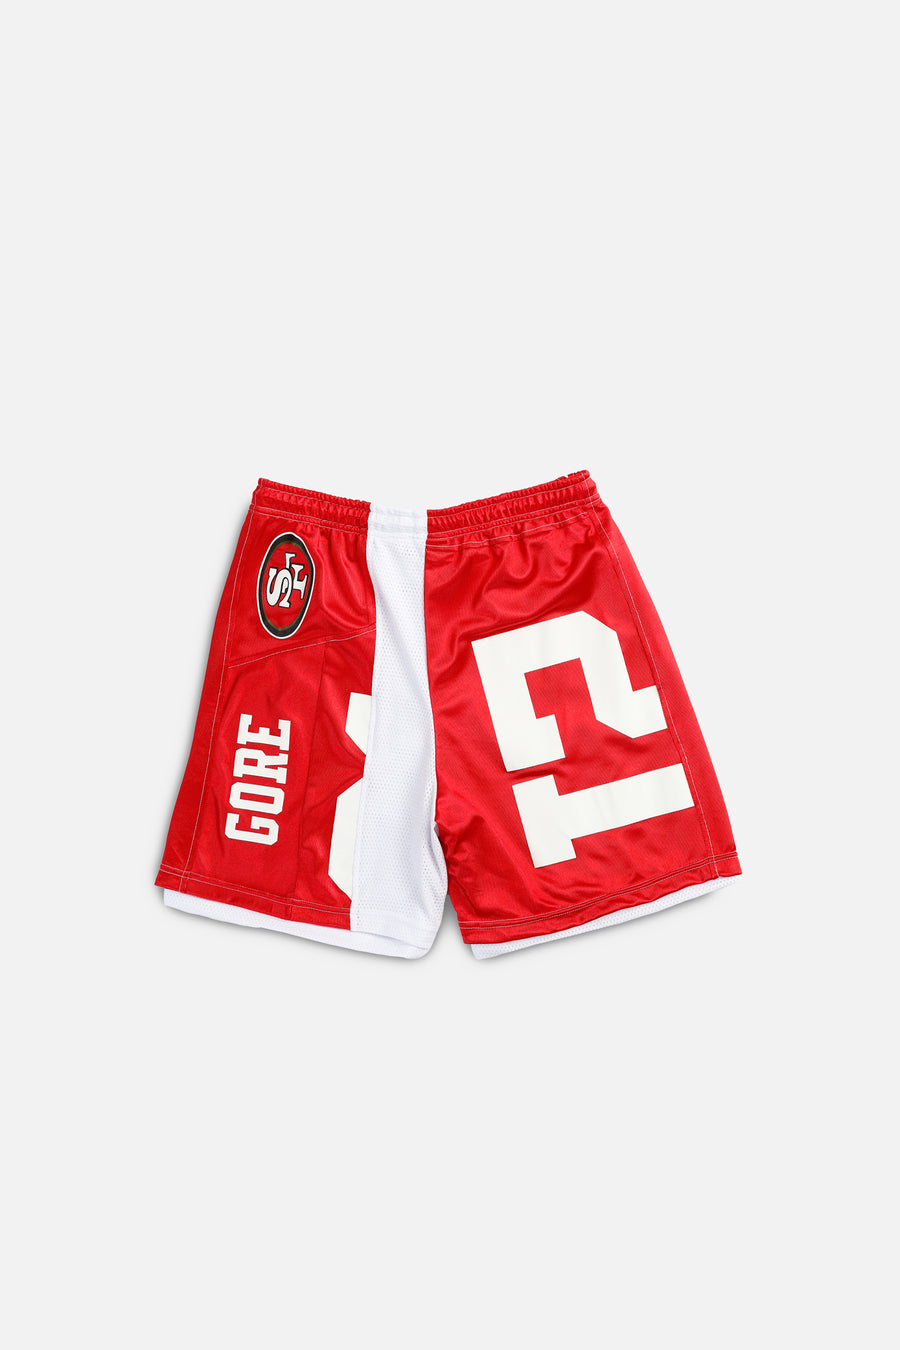 Unisex Rework San Francisco 49ers NFL Jersey Shorts - XL